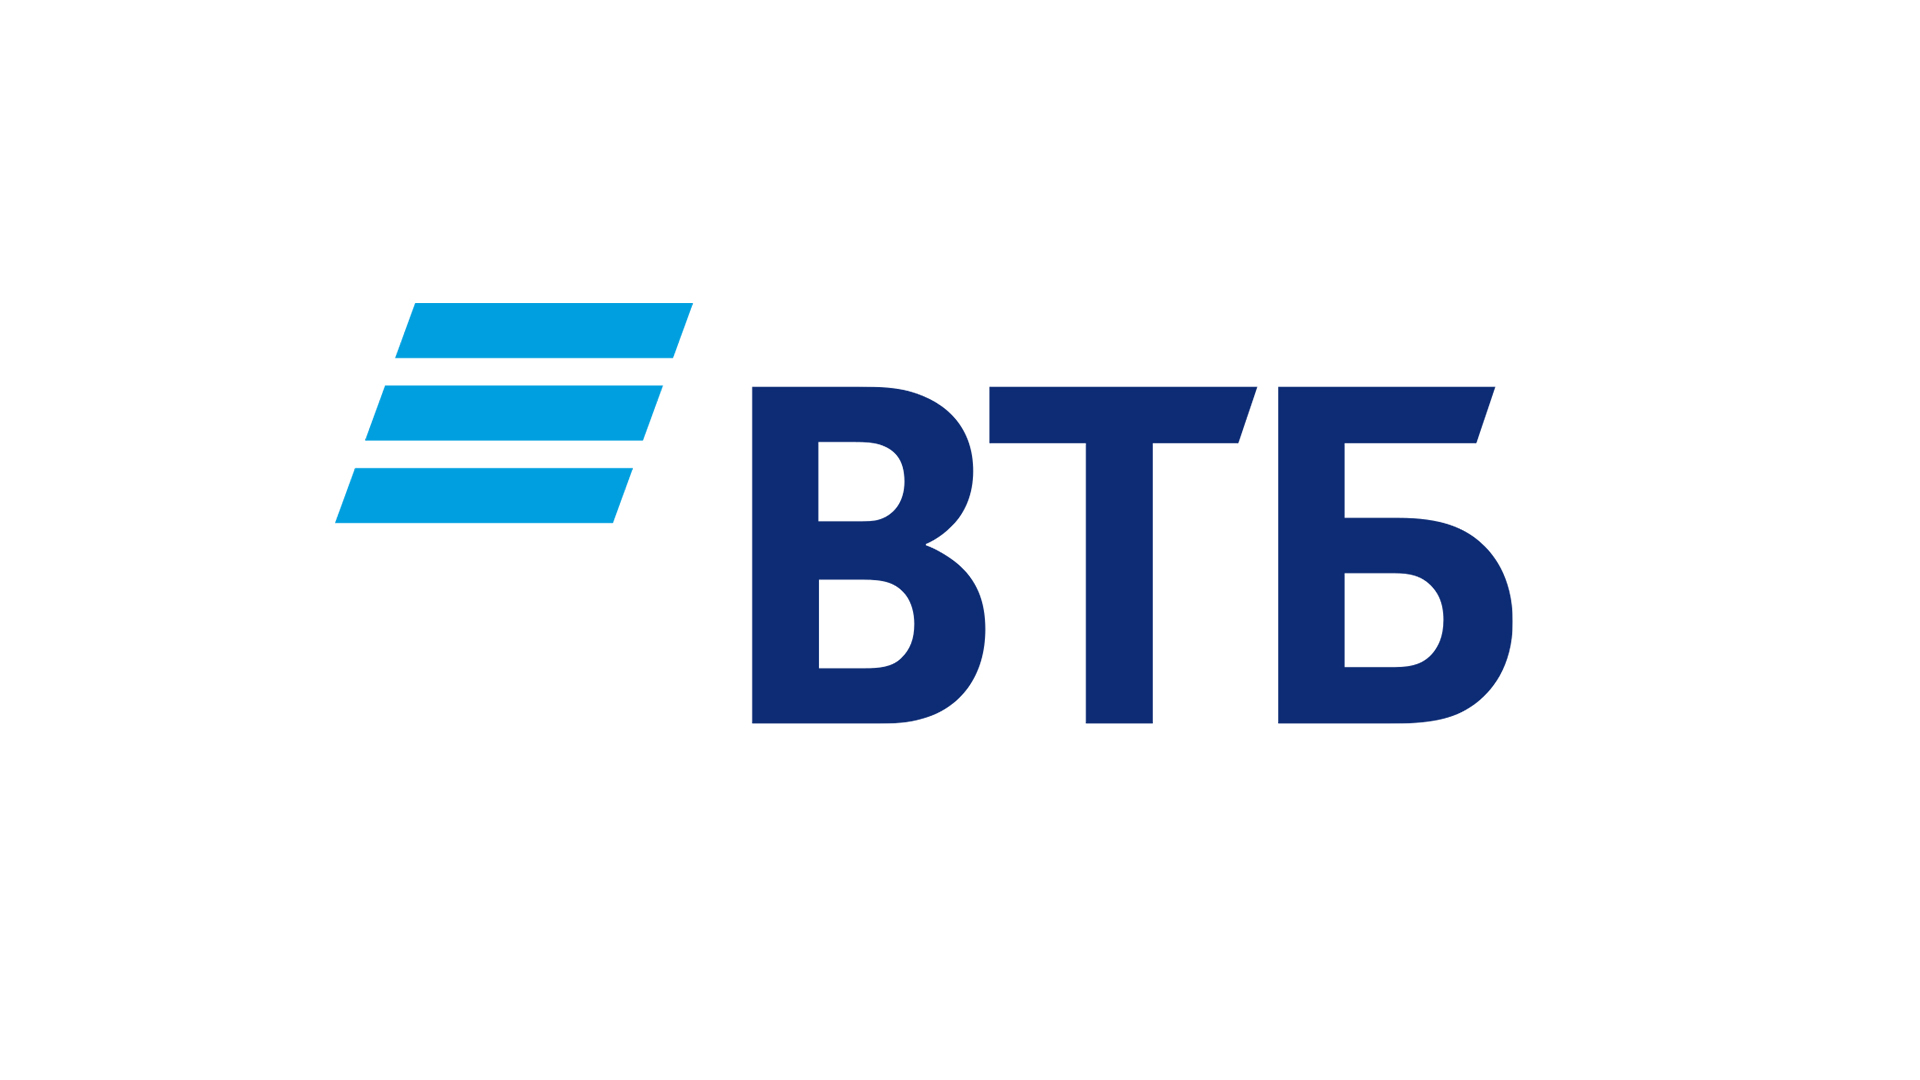 Глава ВТБ Андрей Костин назвал условия полного отказа банков от SWIFT